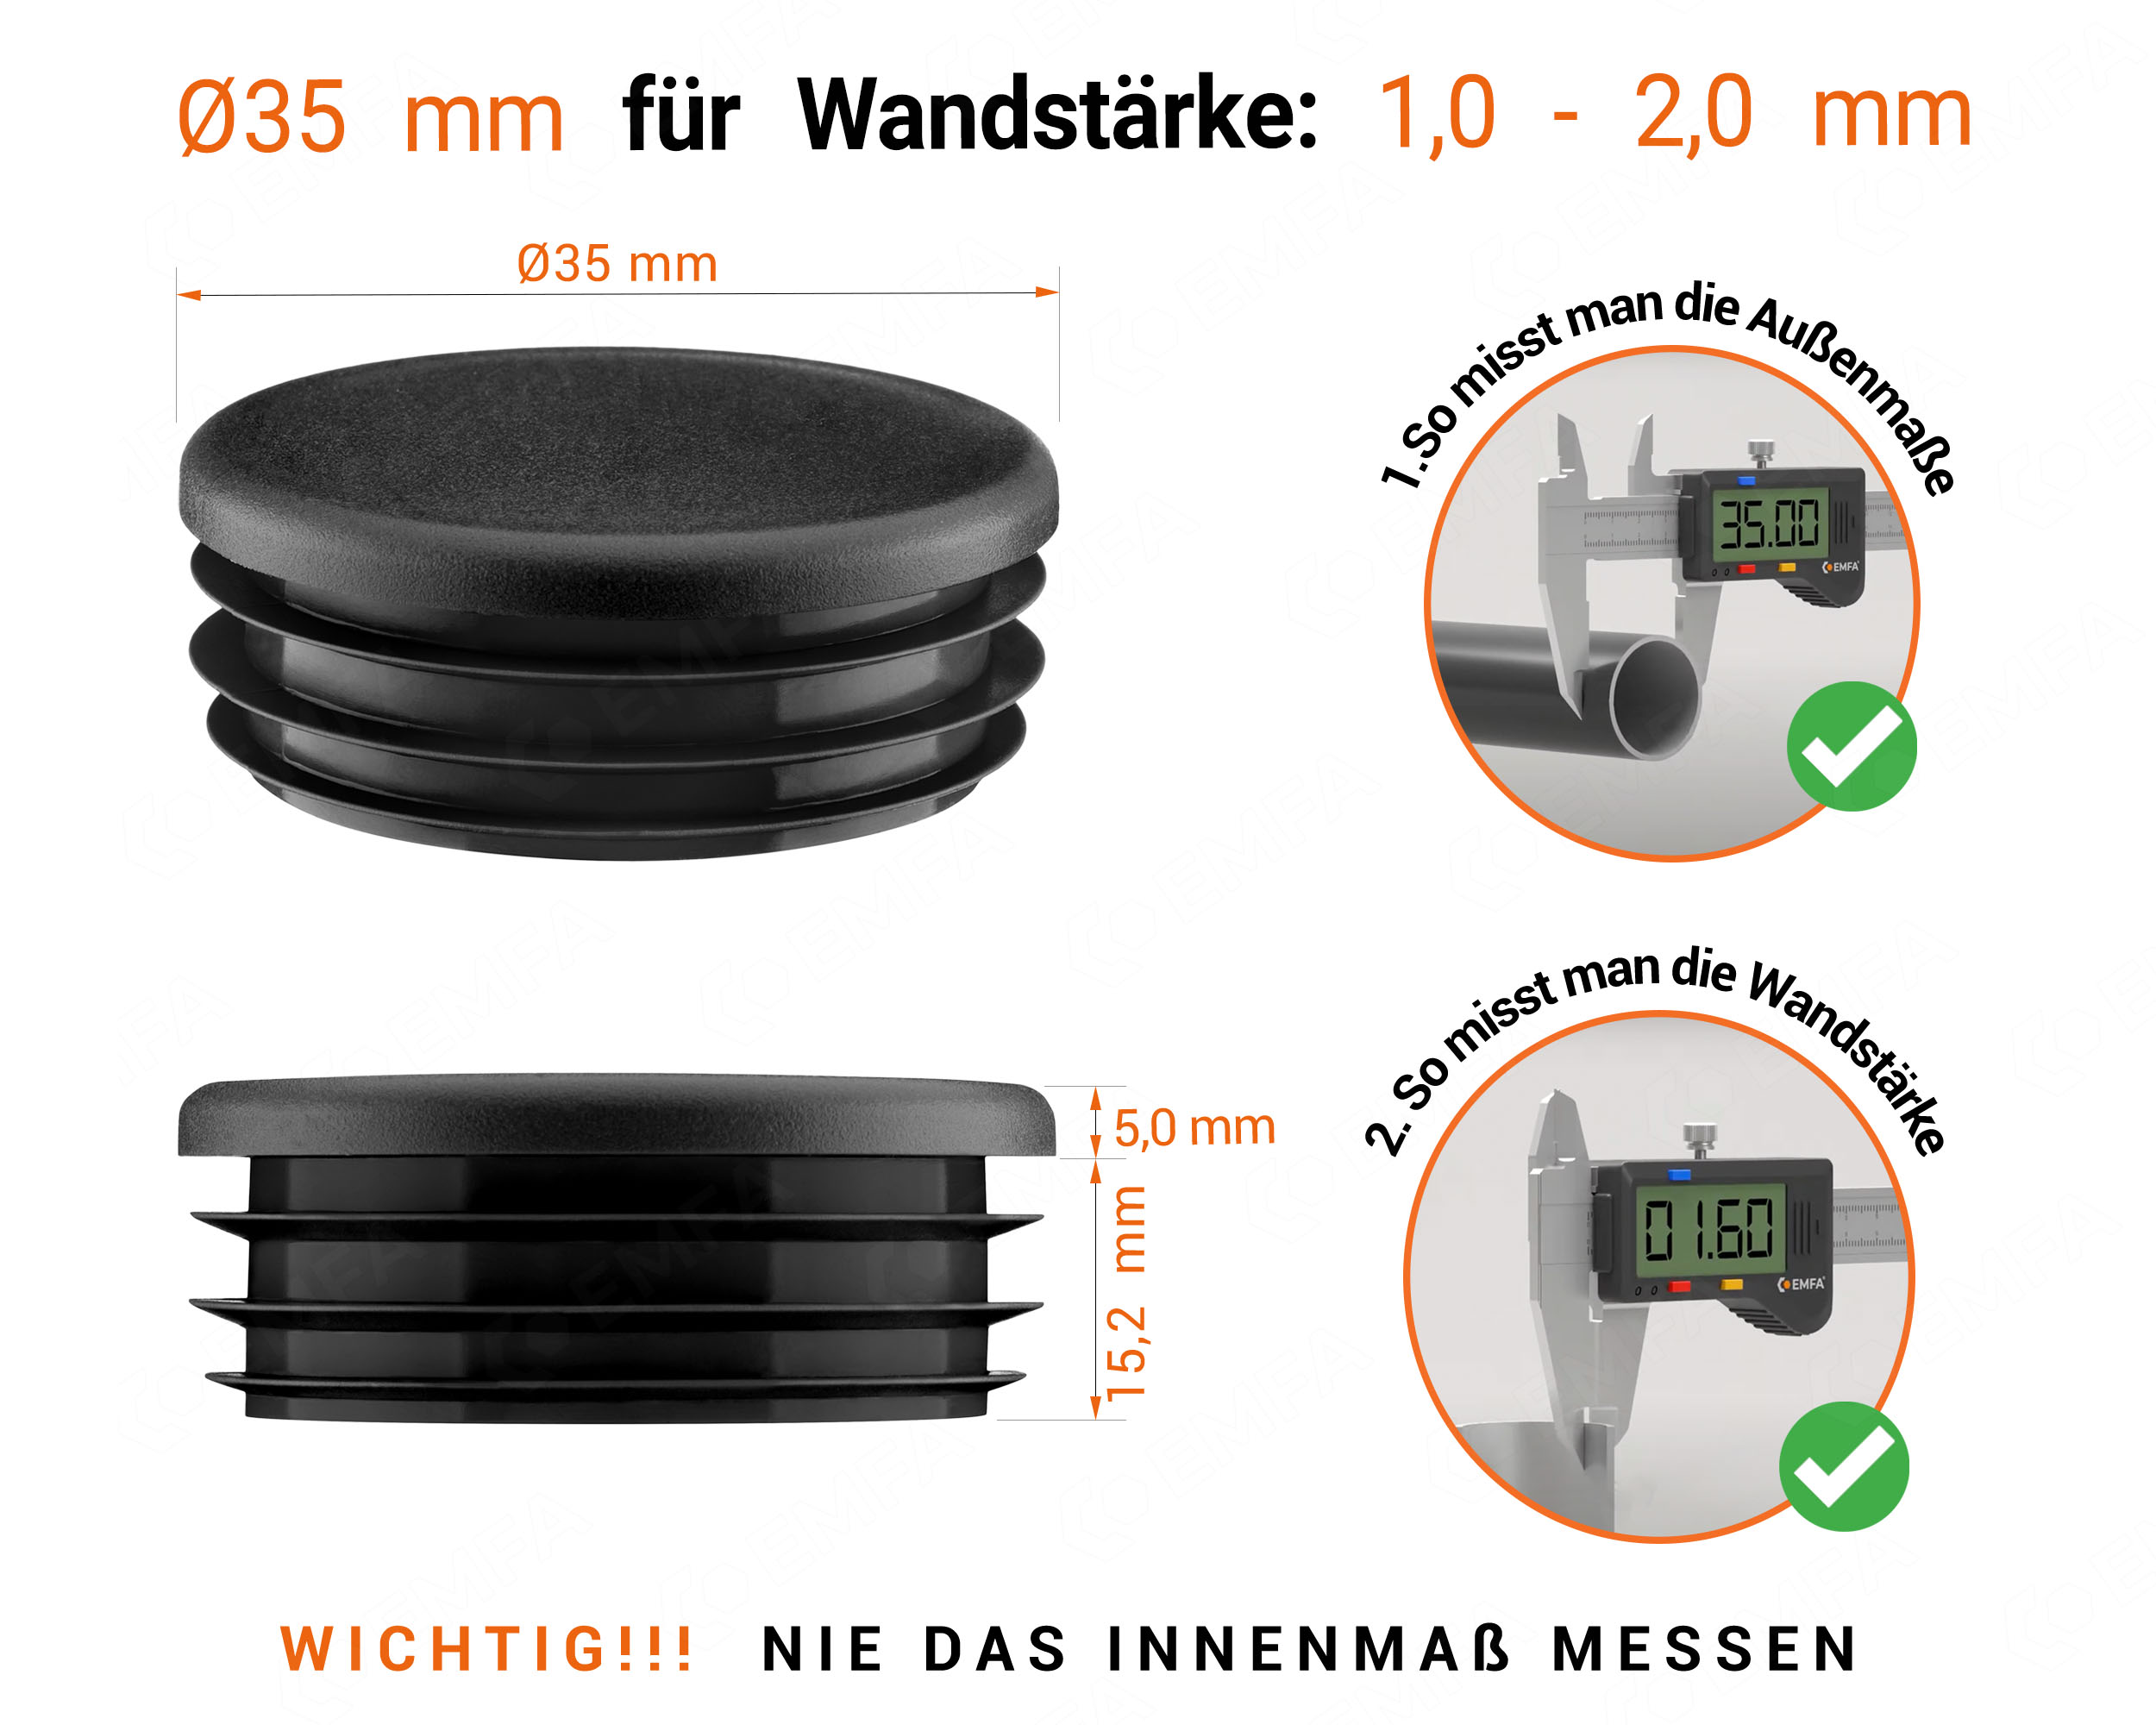 Schwarze Endkappe für Rundrohre in der Größe 35 mm mit technischen Abmessungen und Anleitung für korrekte Messung